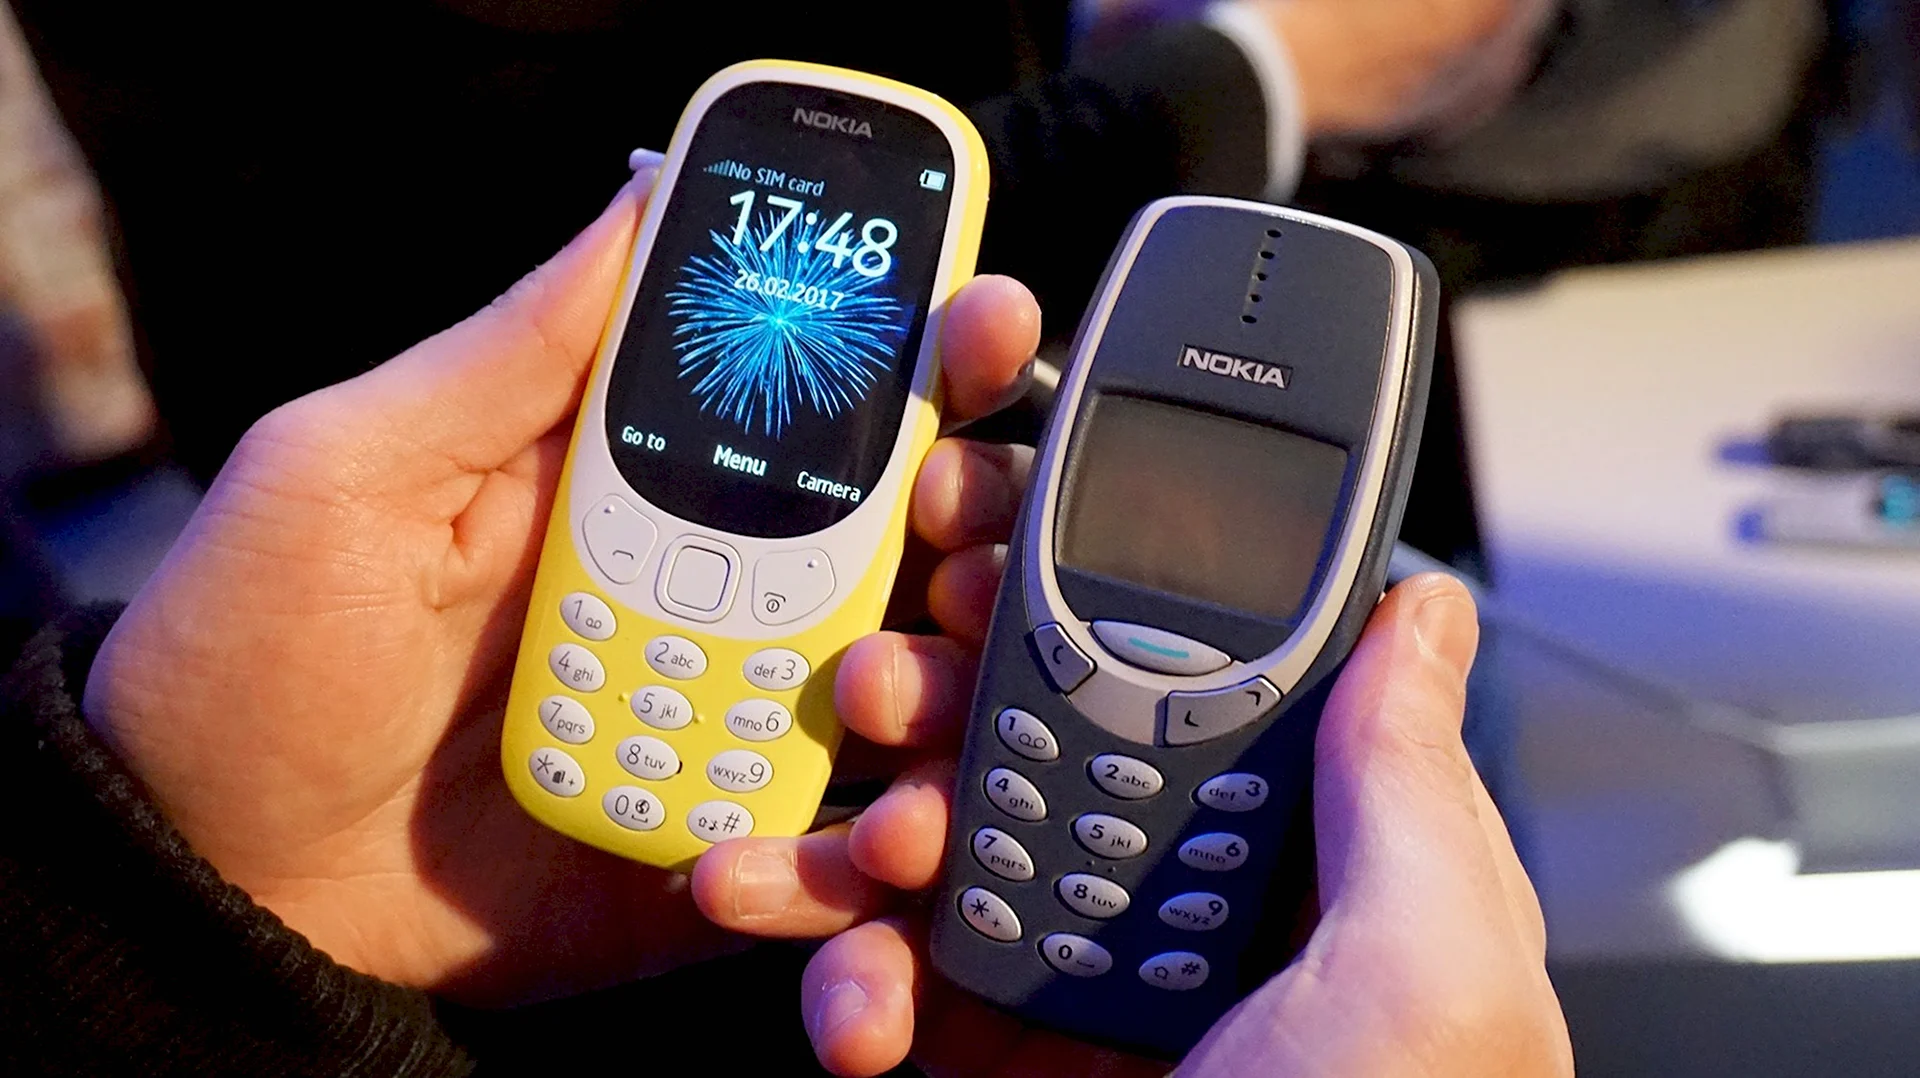 Nokia 3310 2000